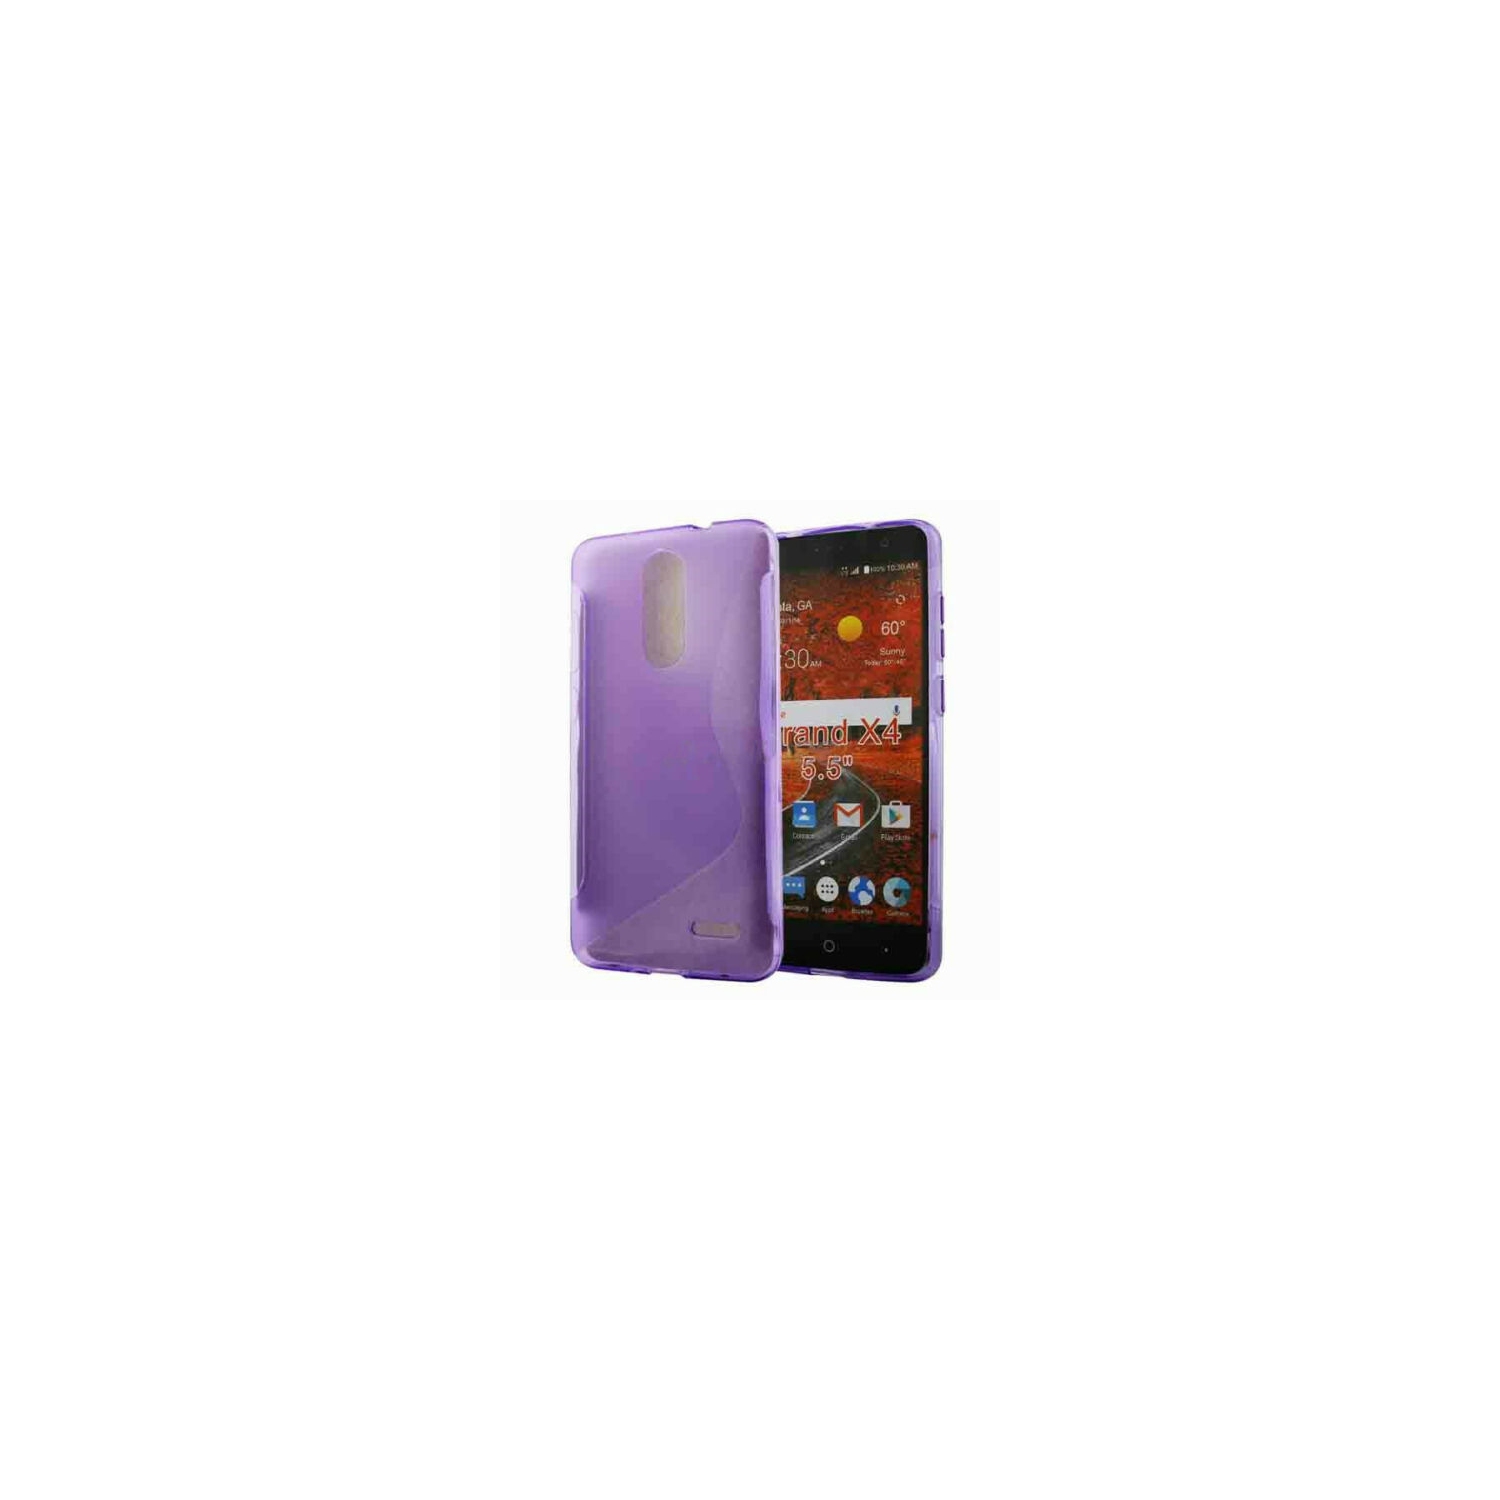 【CSmart】 Ultra Thin Soft TPU Silicone Jelly Bumper Back Cover Case for ZTE Grand X4, Purple